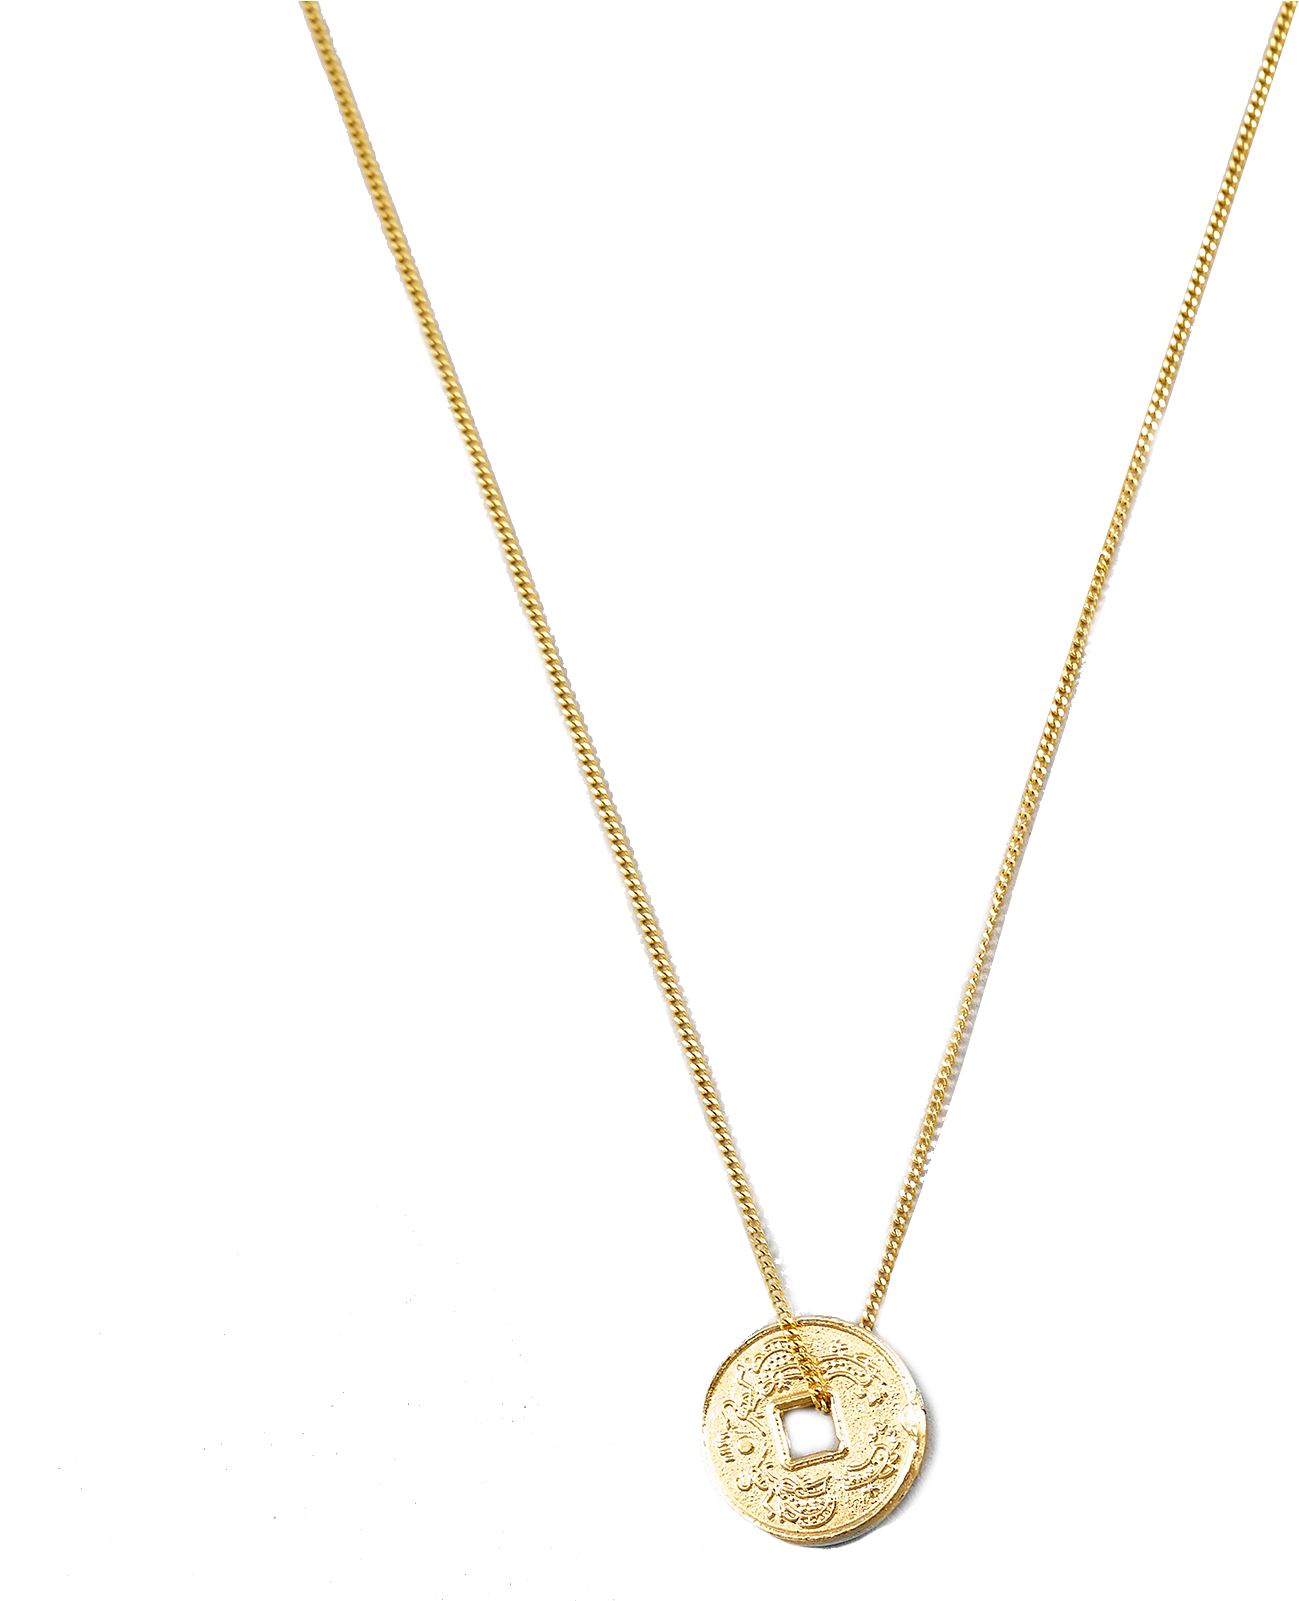 Elegant Gold Pendant Necklace PNG image